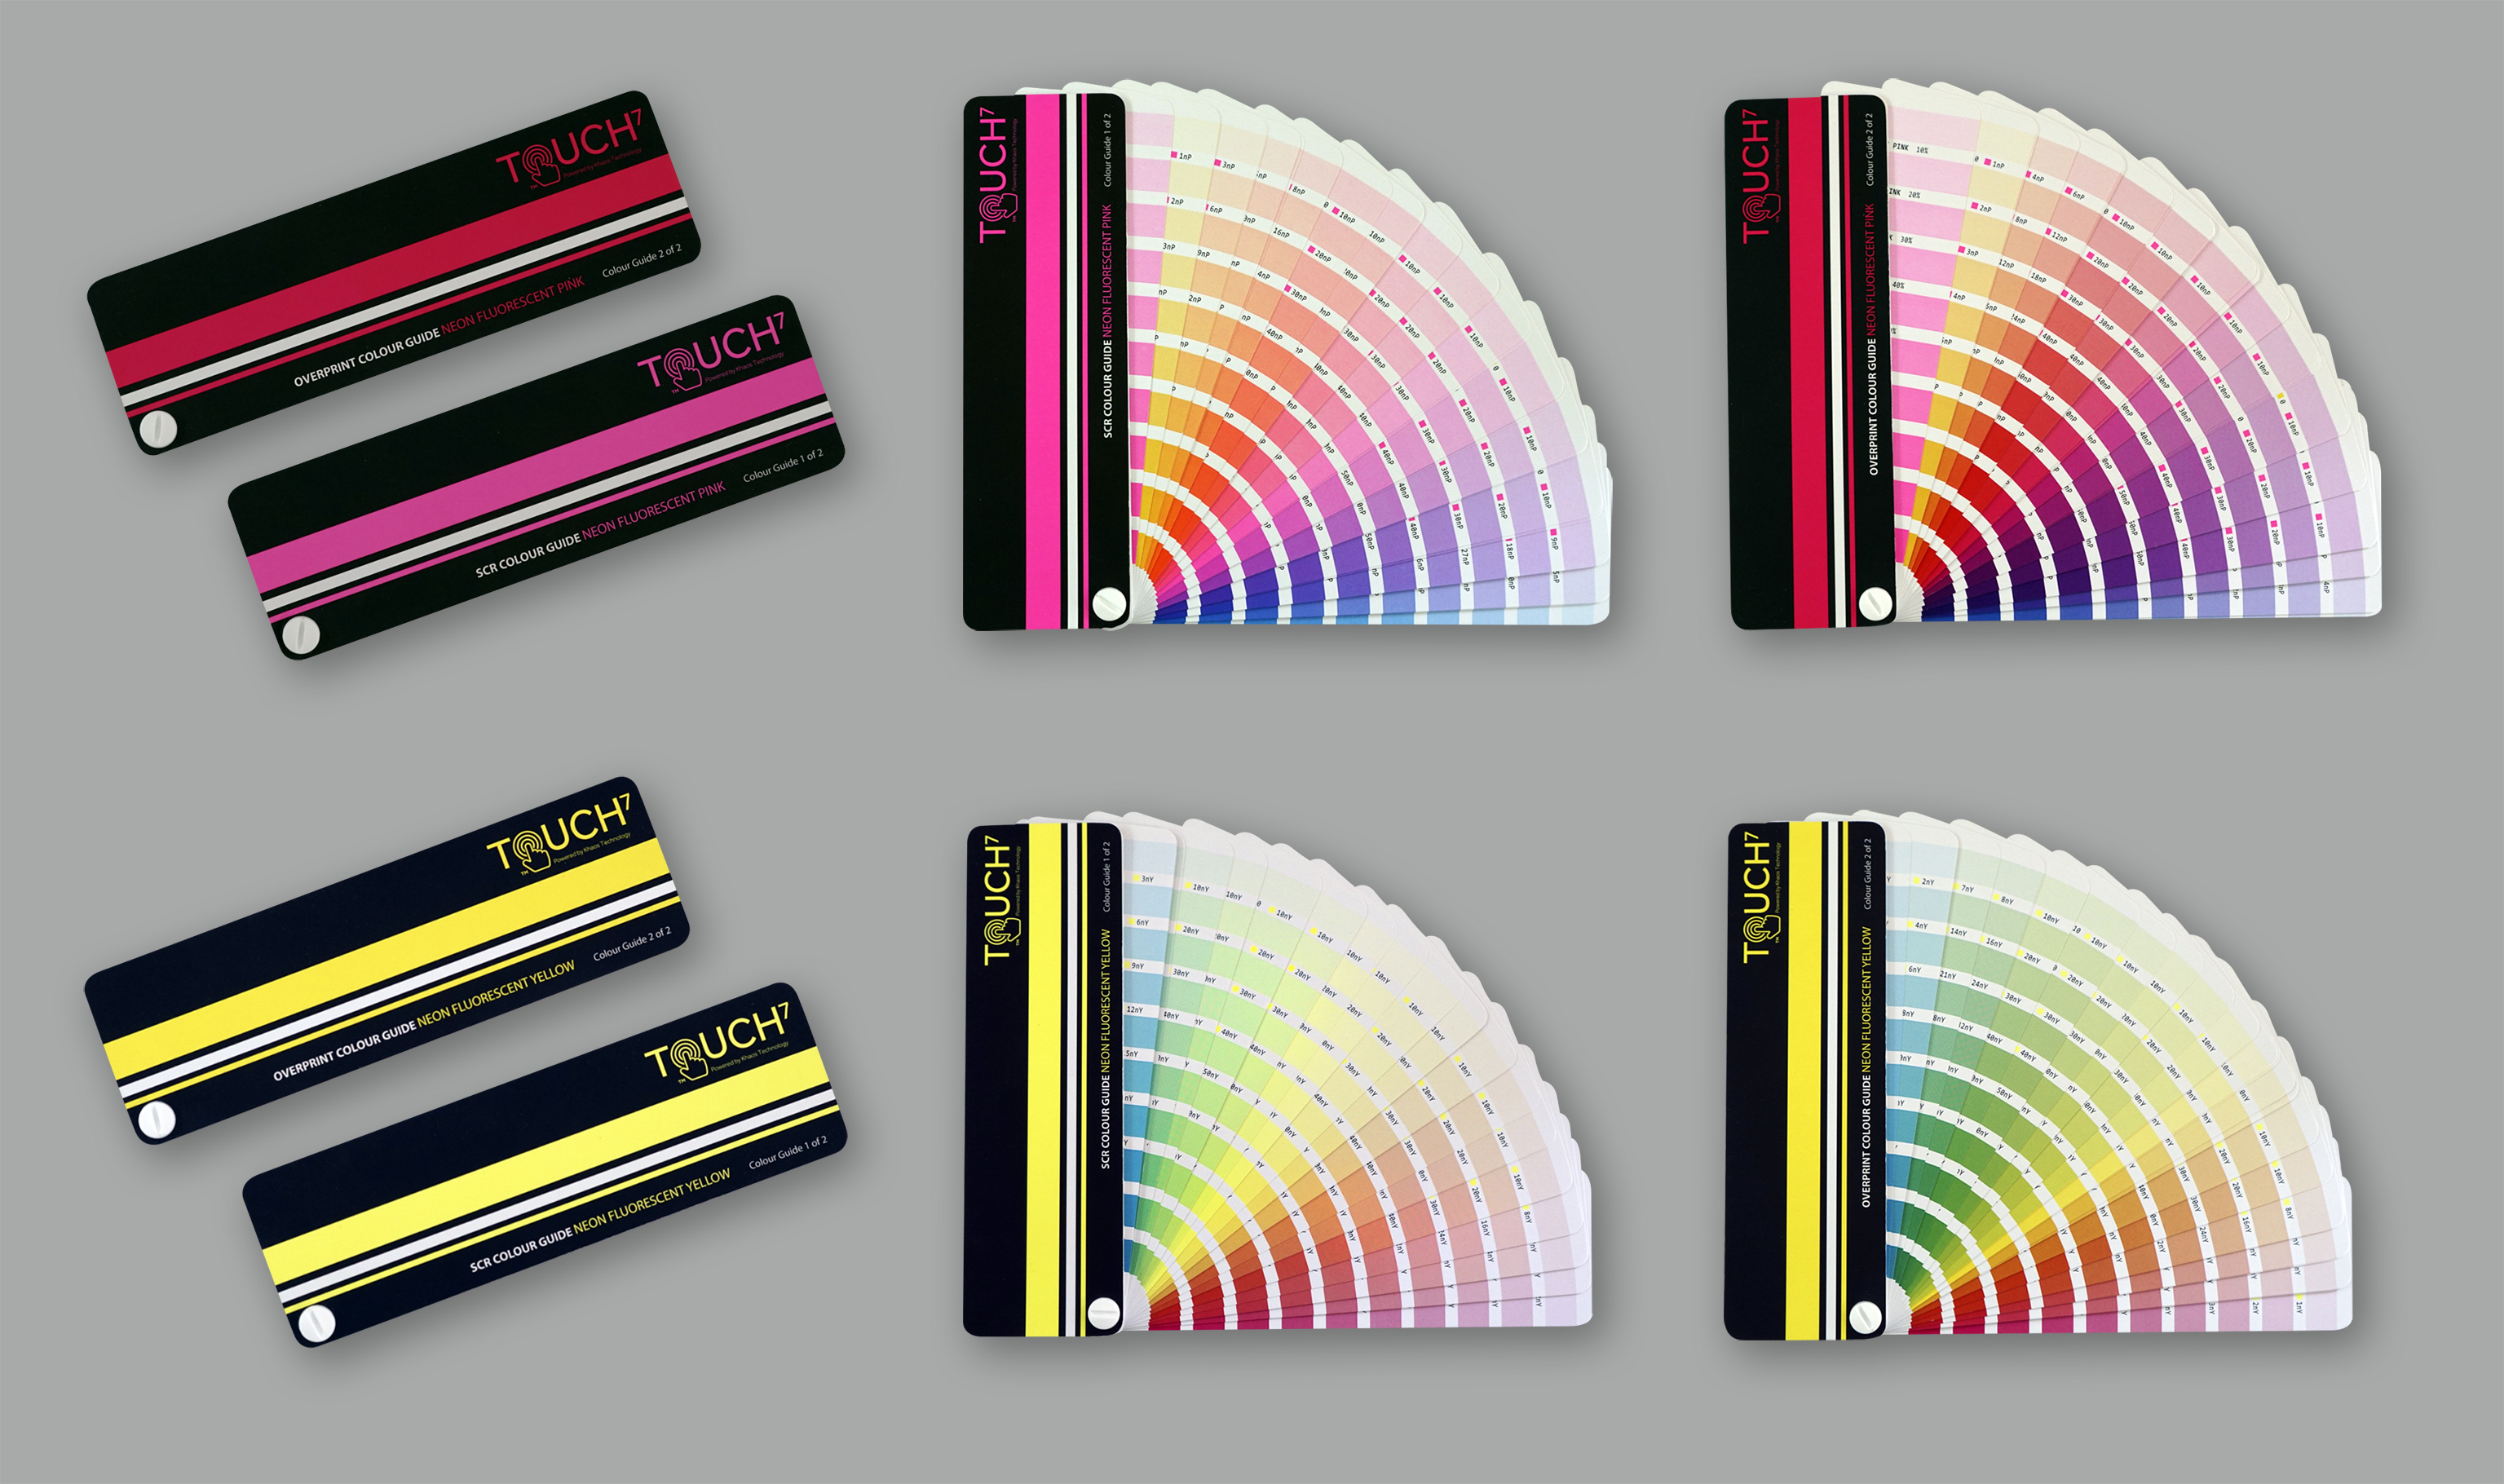 Štyri digitálne neónové farebné schémy Touch7 umožňujú konzistentnú reprodukciu 1520 farieb.